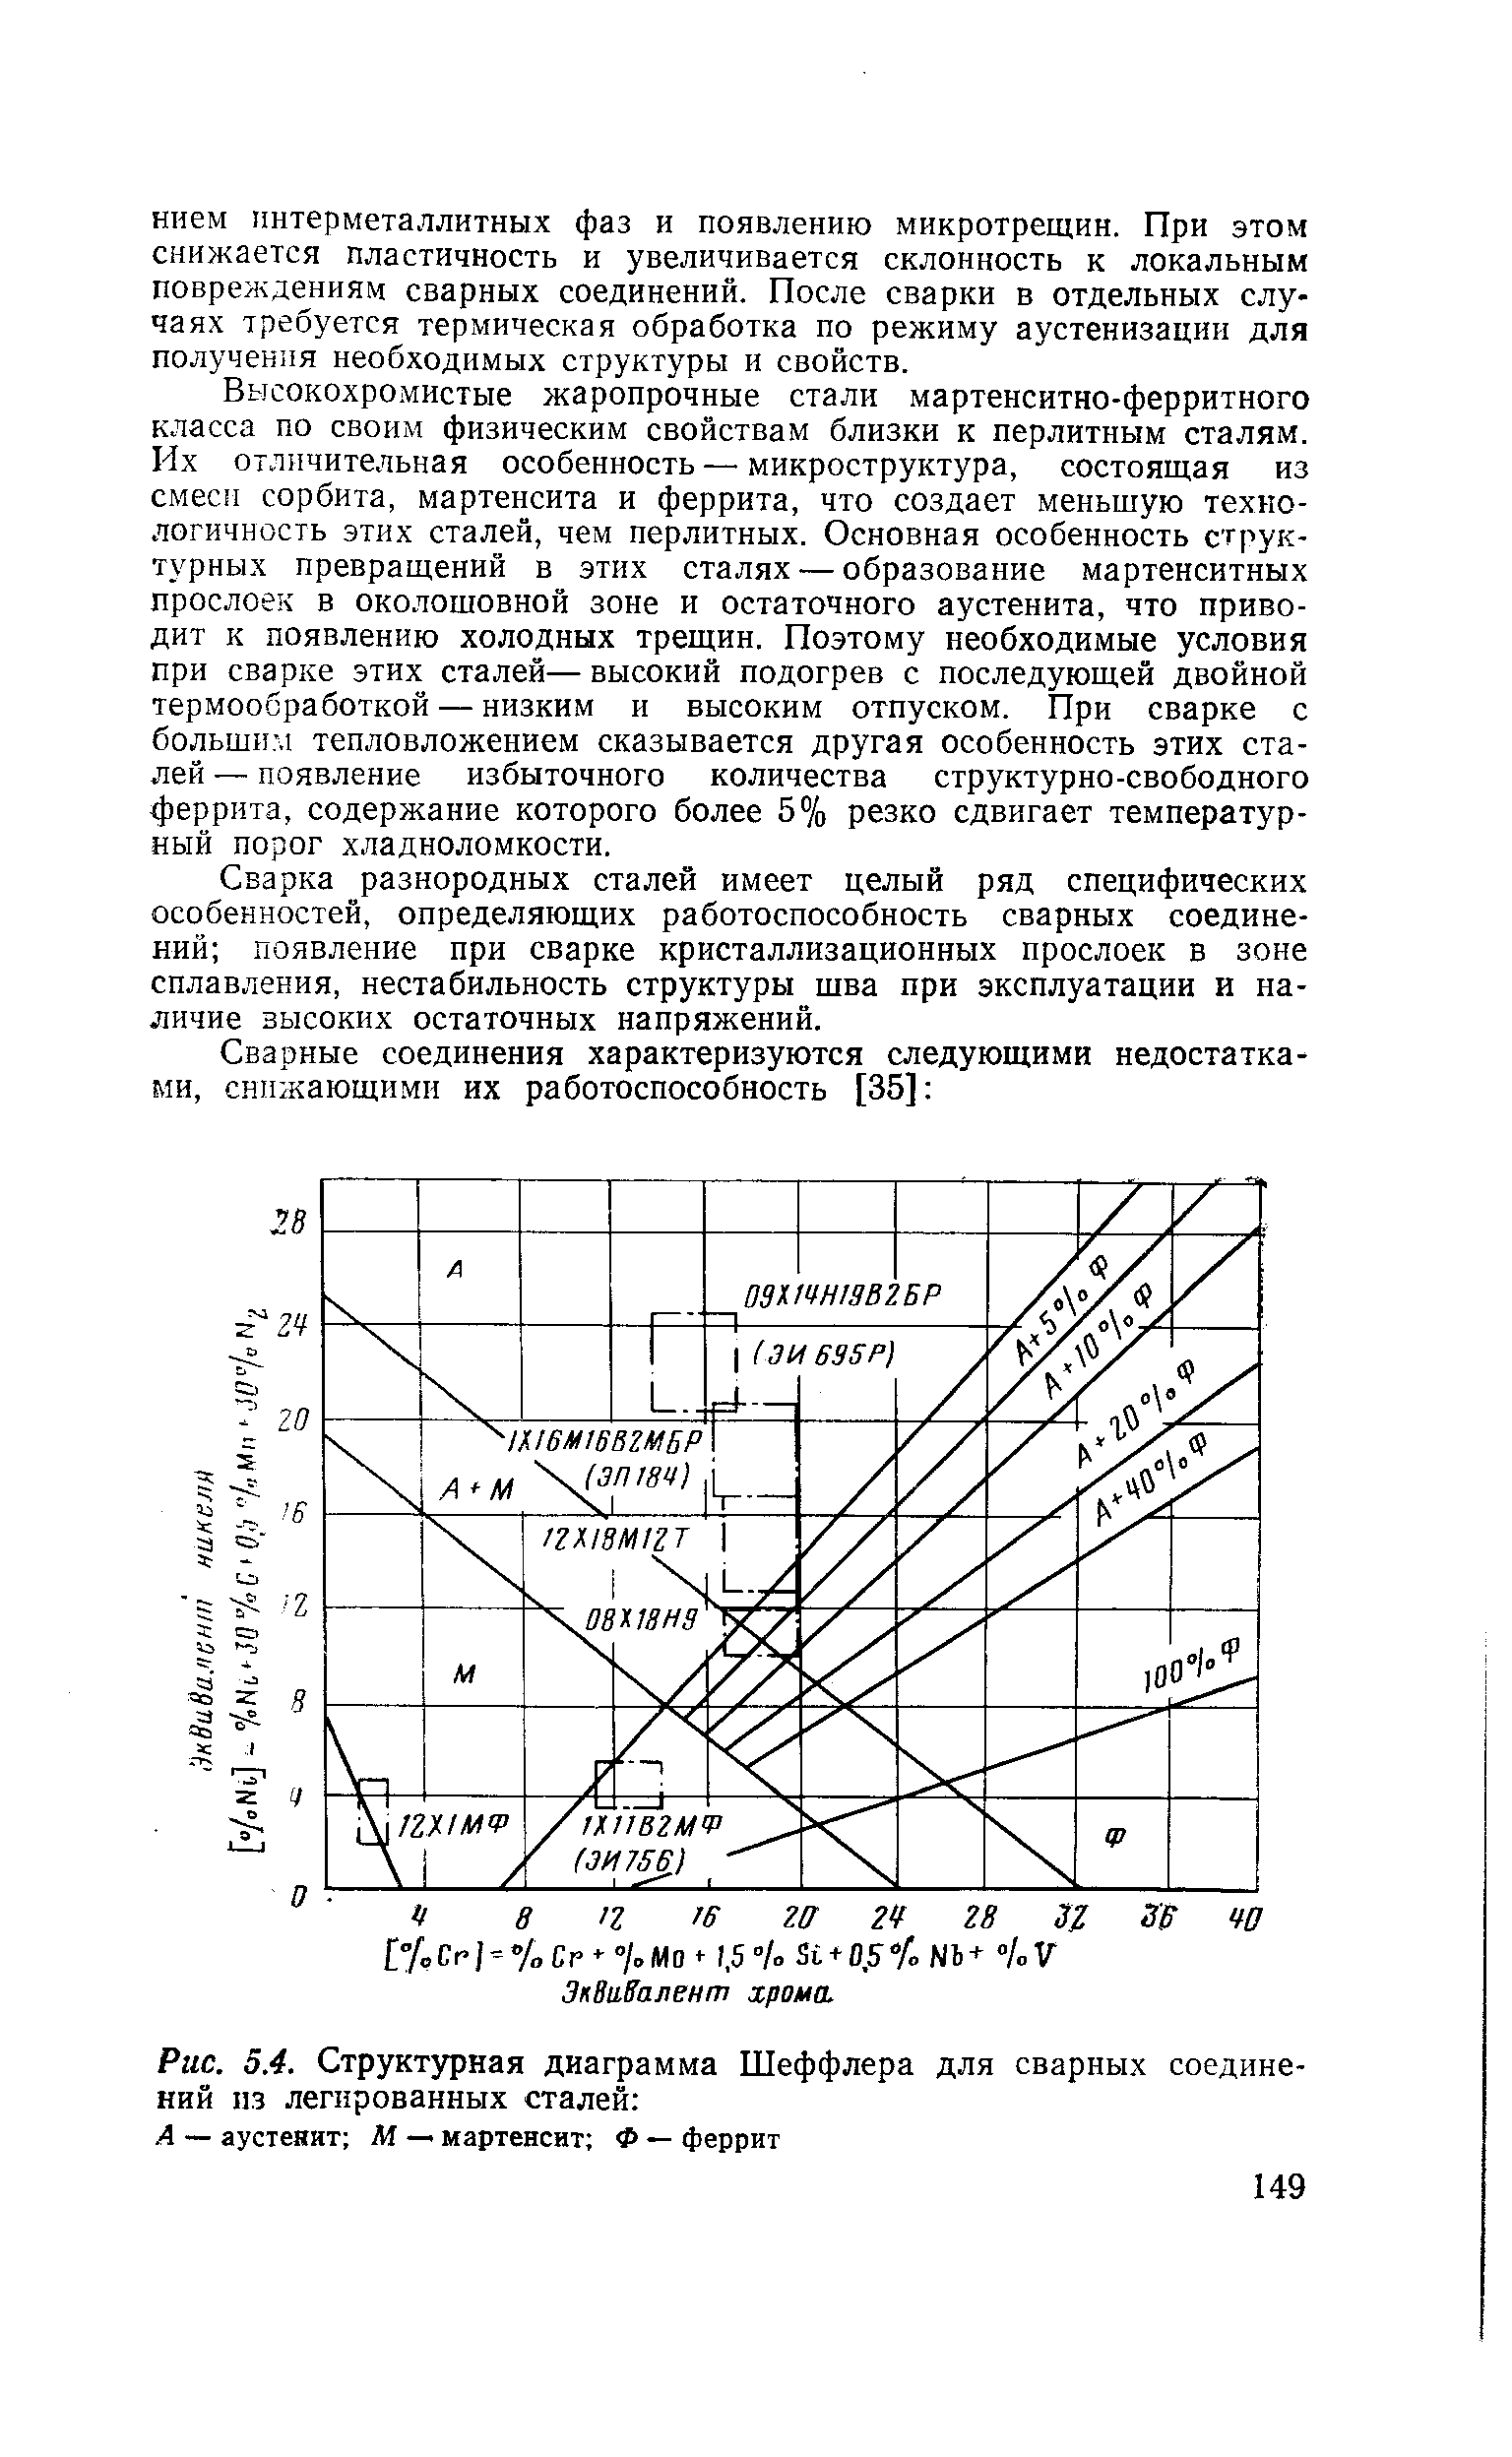 Рис. 0.4. Структурная диаграмма Шеффлера для сварных соединений пз легированных сталей 
